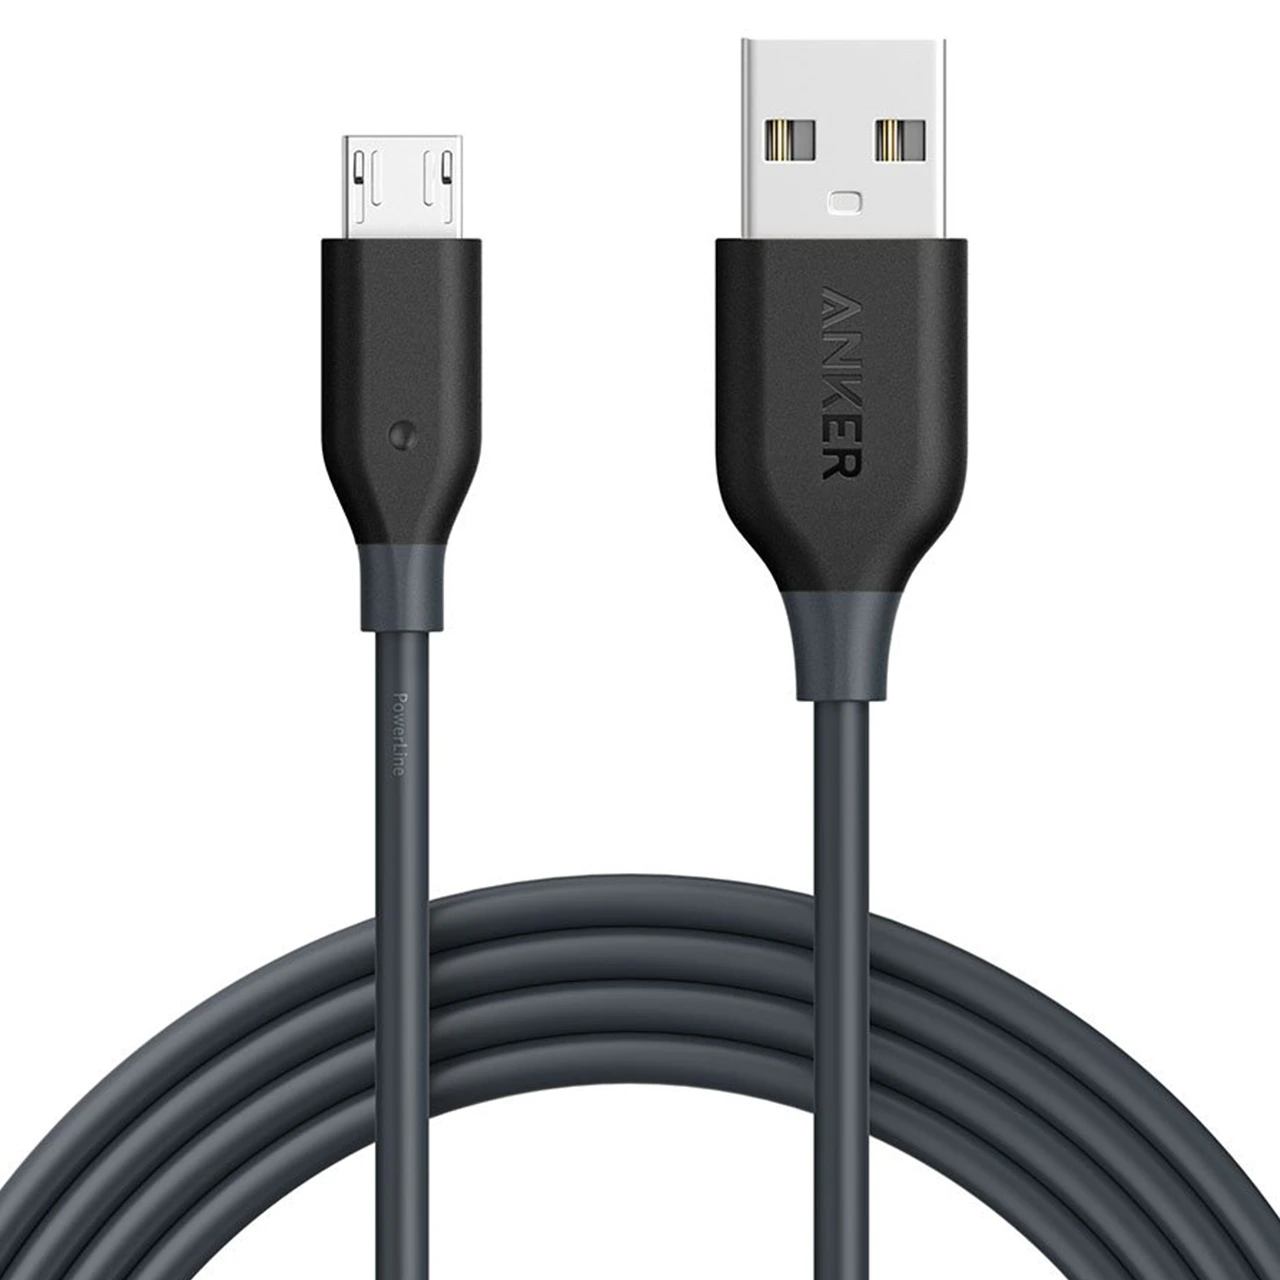 کابل تبدیل USB به میکرو USB انکر مدل A8133 طول 1.8 متر